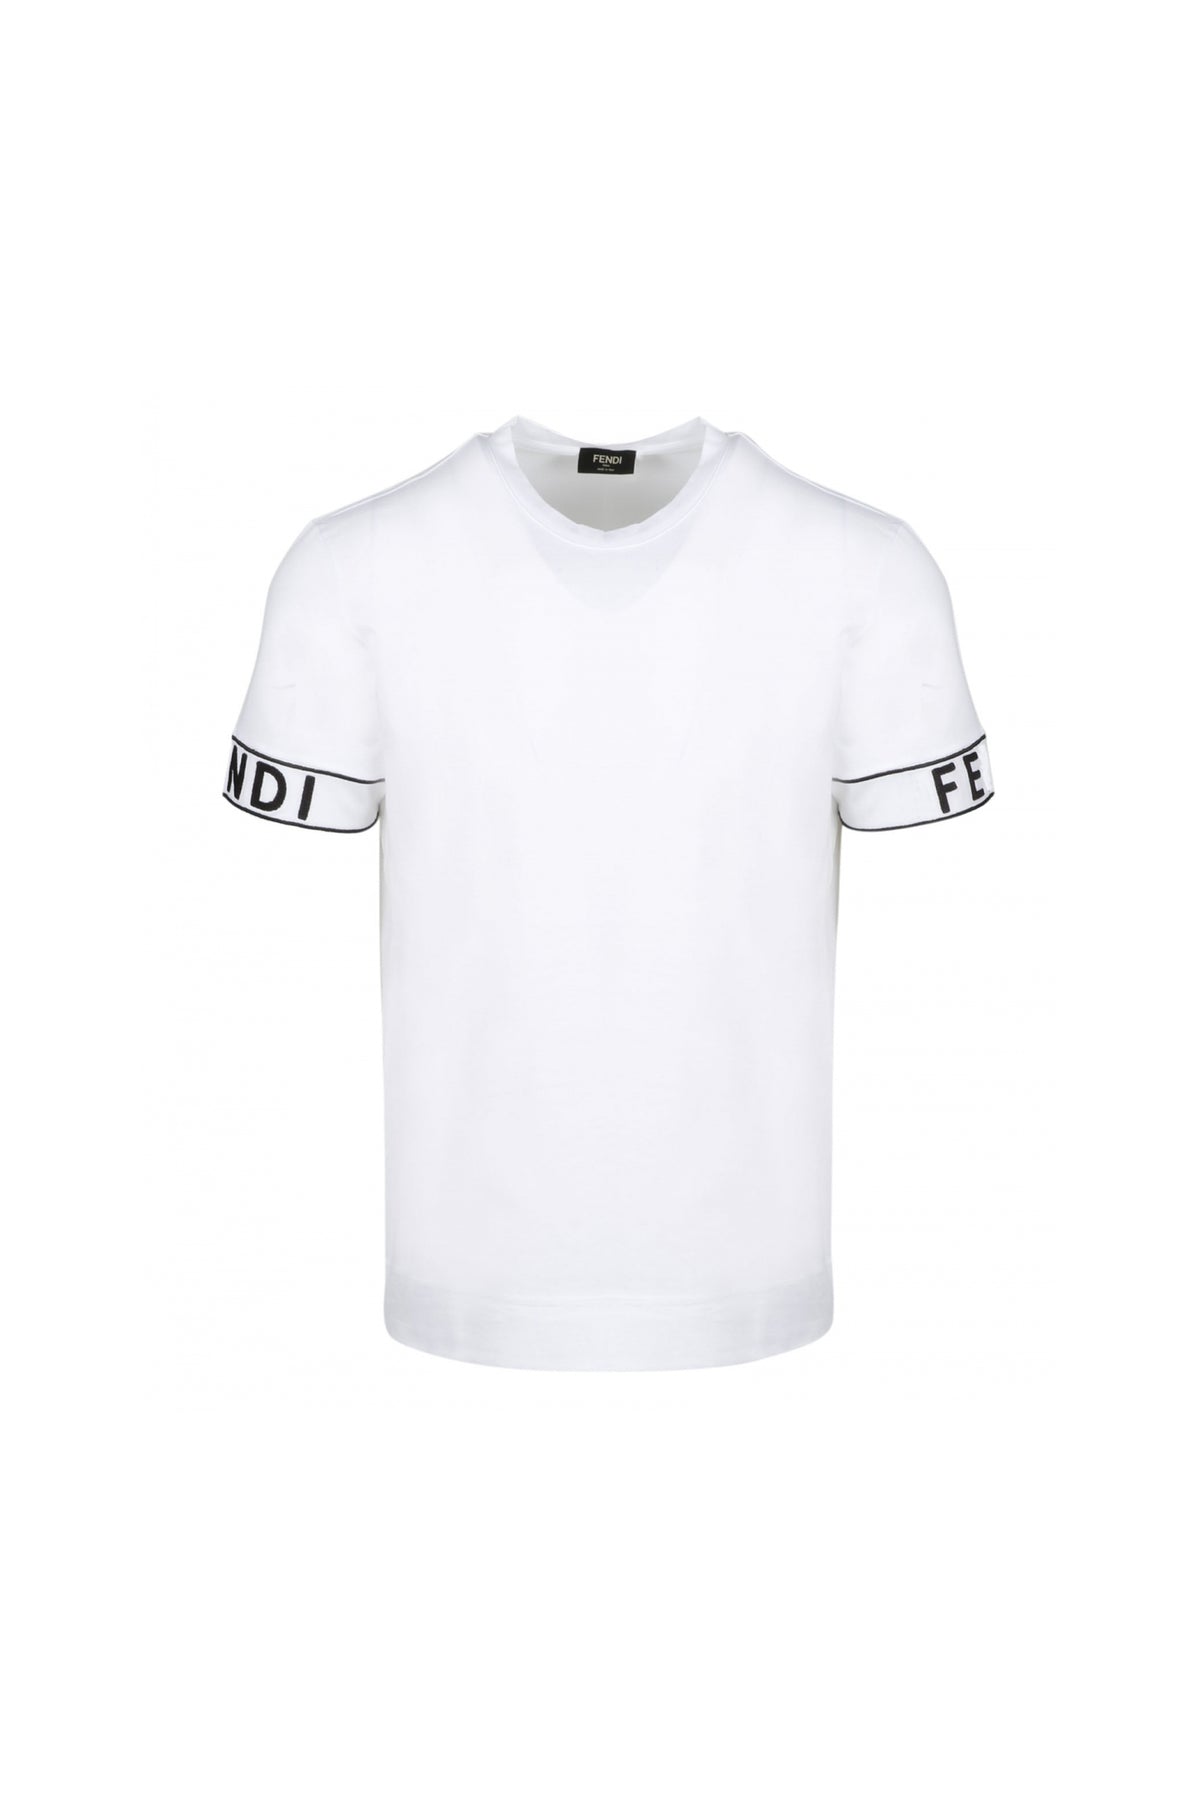 Fendi White Tape hand logo T-Shirt